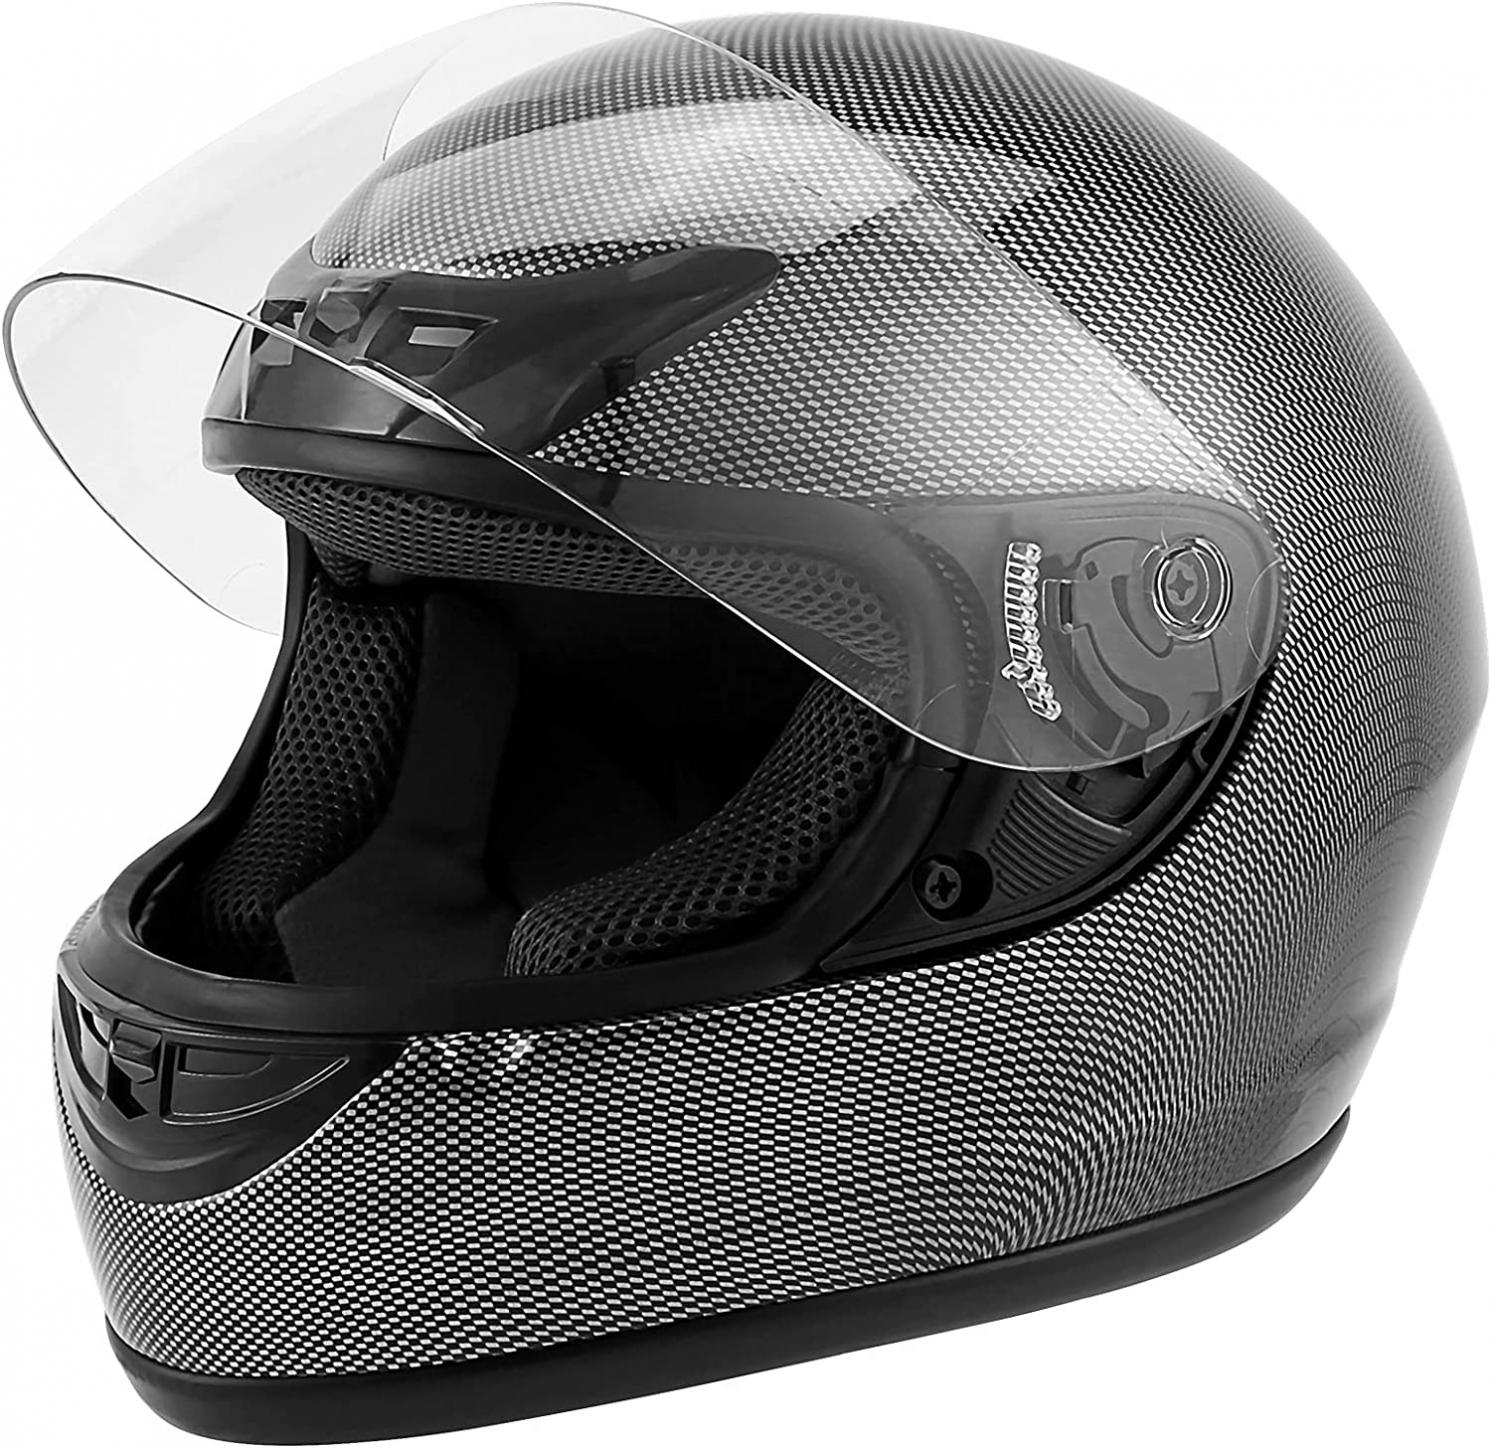 XFMT DOT Adult Motorcycle Flip Up Full Face Helmet Street Dirt Bike ATV Helmets (Carbon Fiber, X-Large)